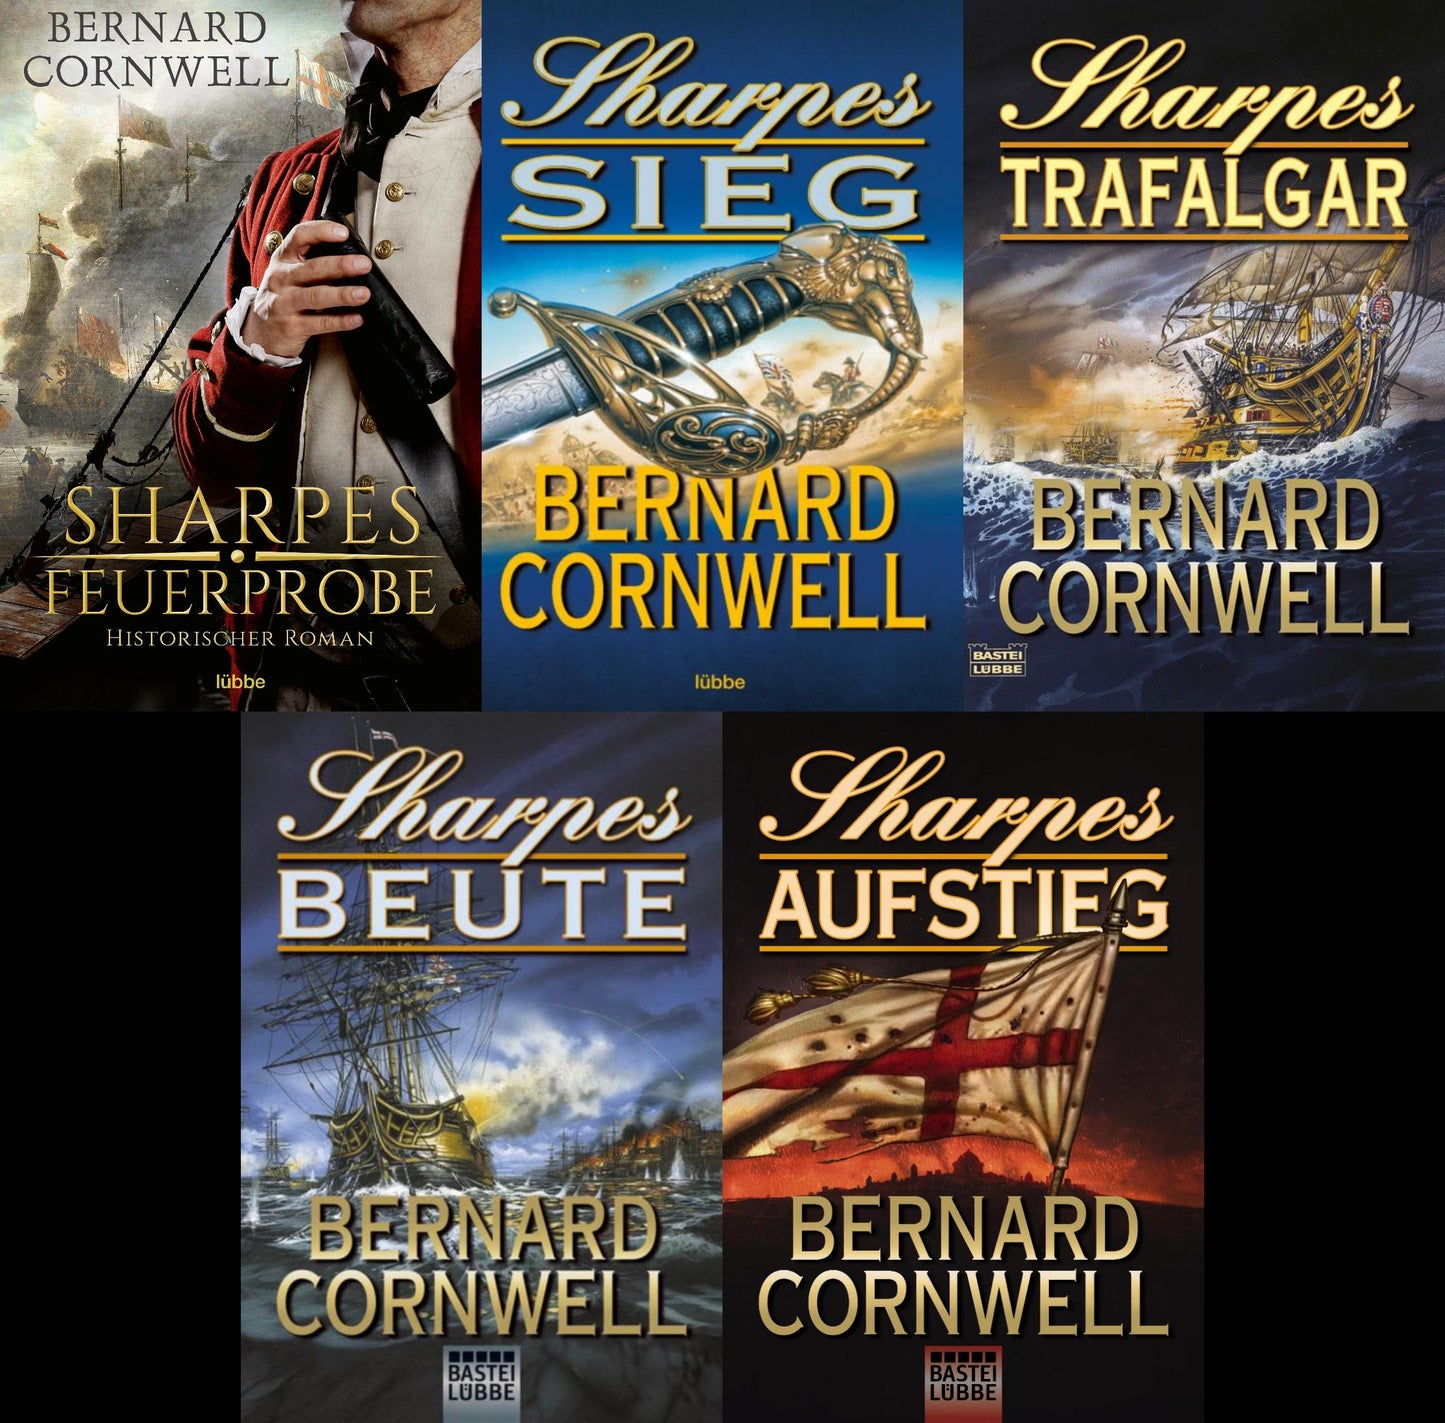 Die Sharpe-Serie von Bernard Cornwell in 5 Bänden plus 1 exklusives Postkartenset